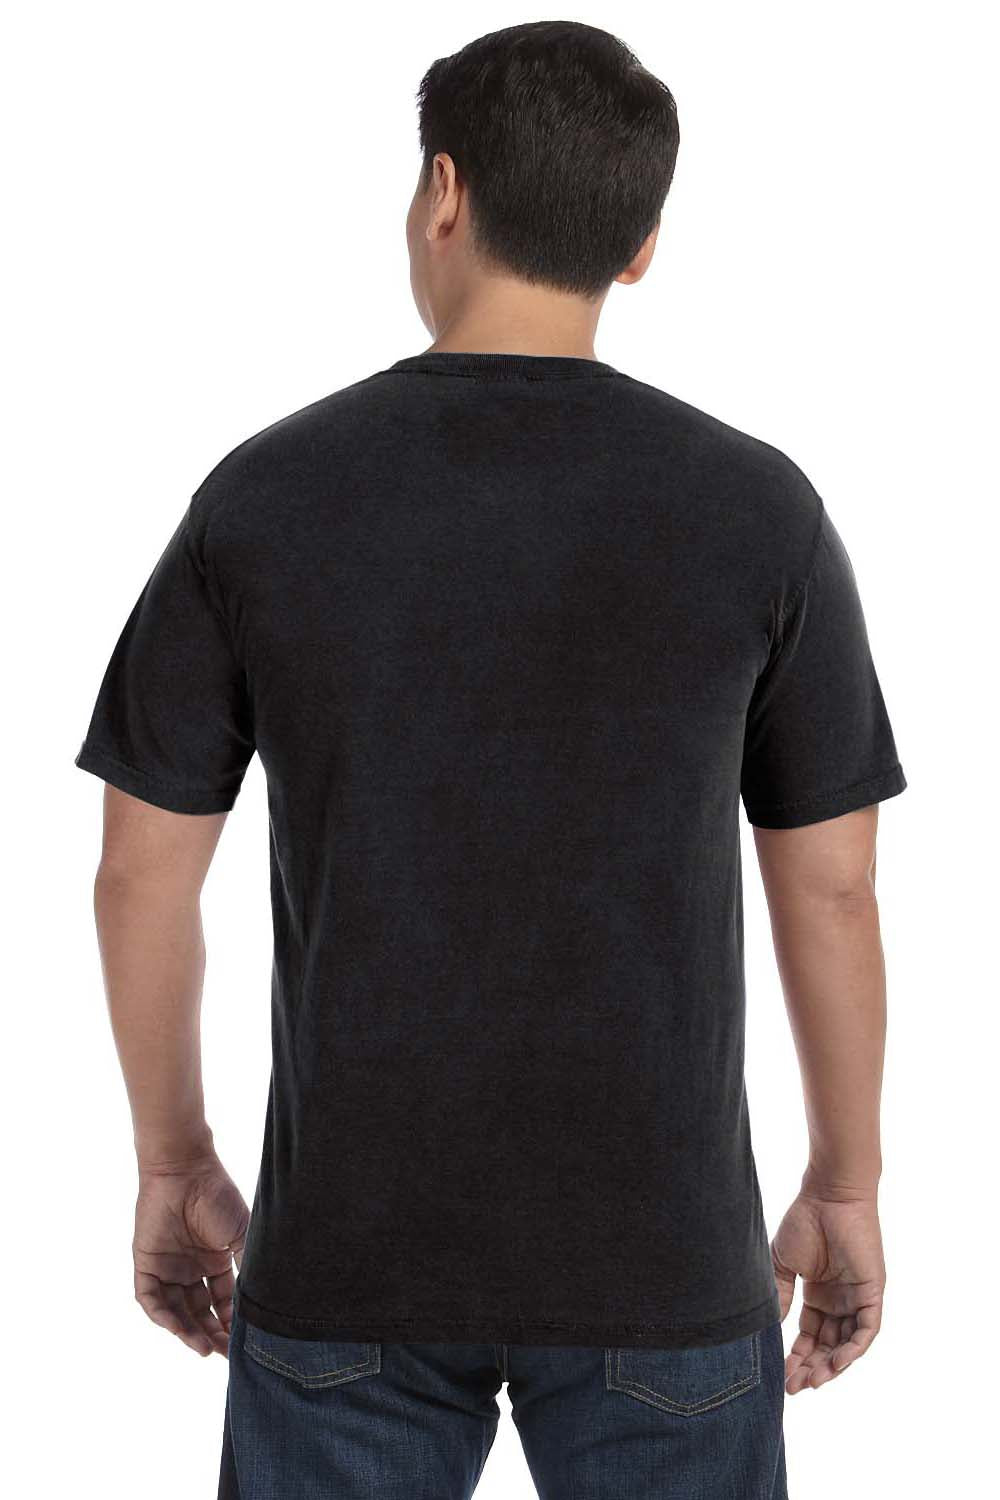 Comfort Colors C1717 Mens Short Sleeve Crewneck T-Shirt Black Back